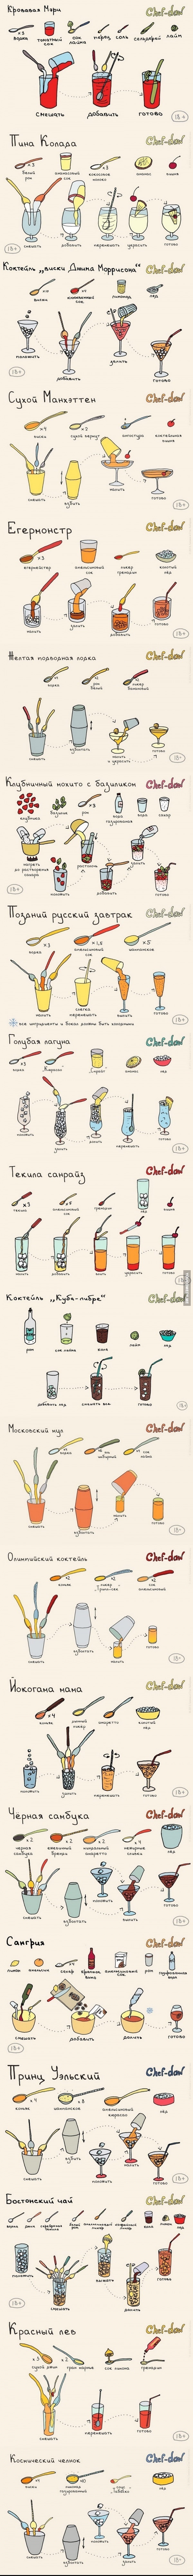 Алкогольные коктейли